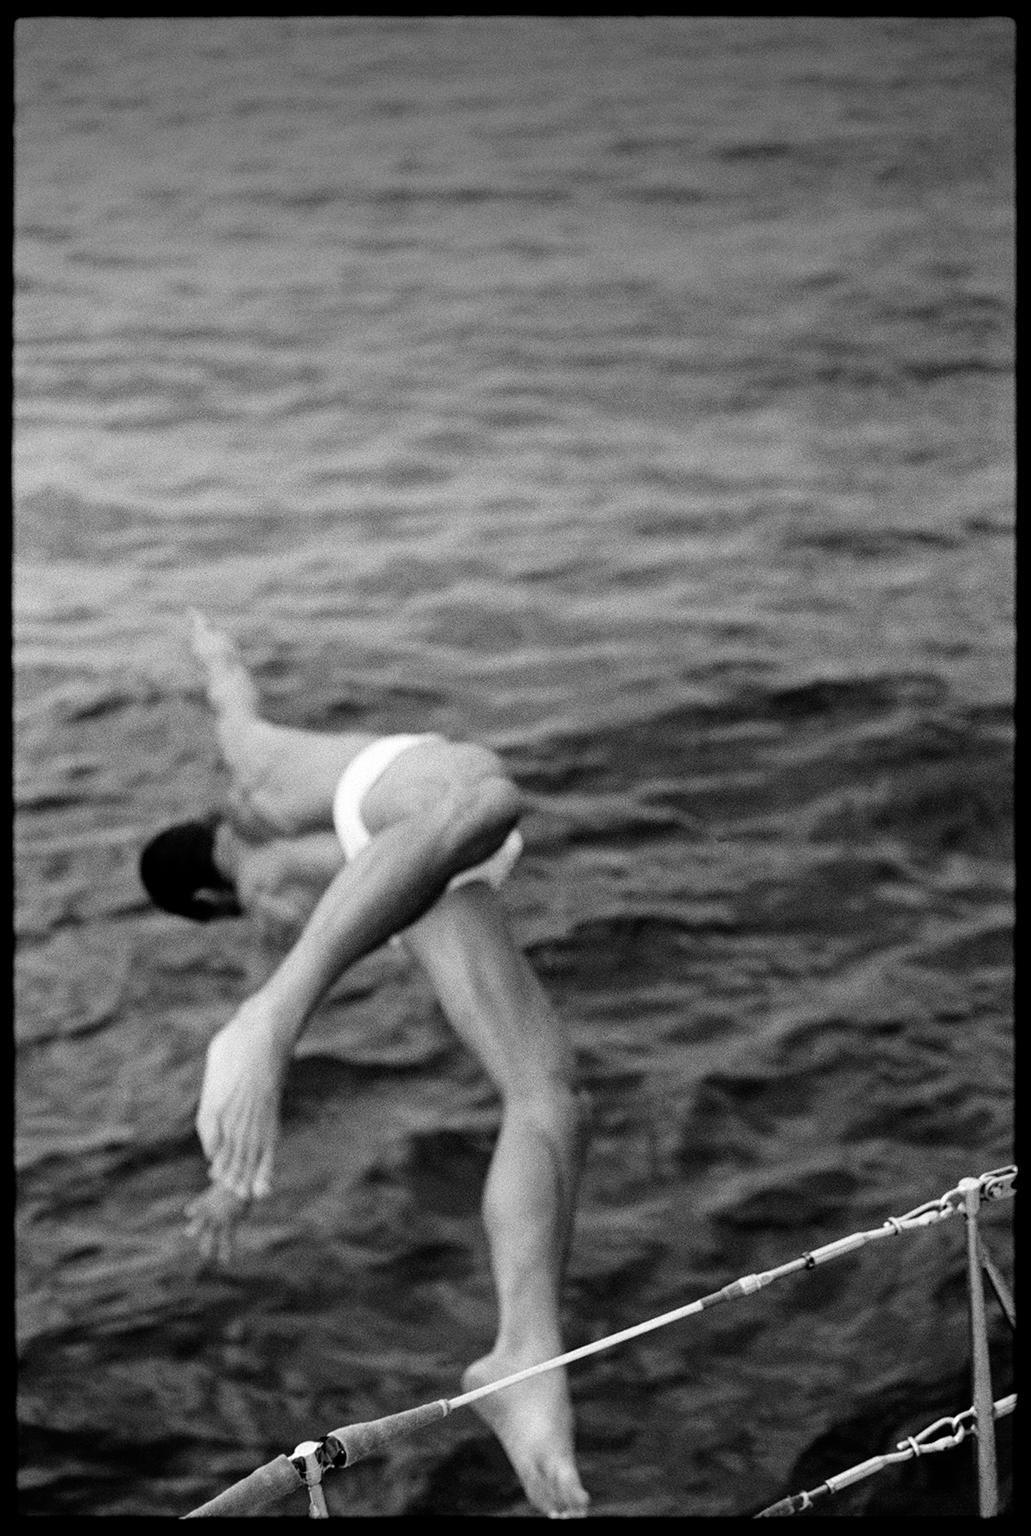 1993-Paulo Italie - Photographie en noir et blanc d'un homme plongant dans un bateau à voile